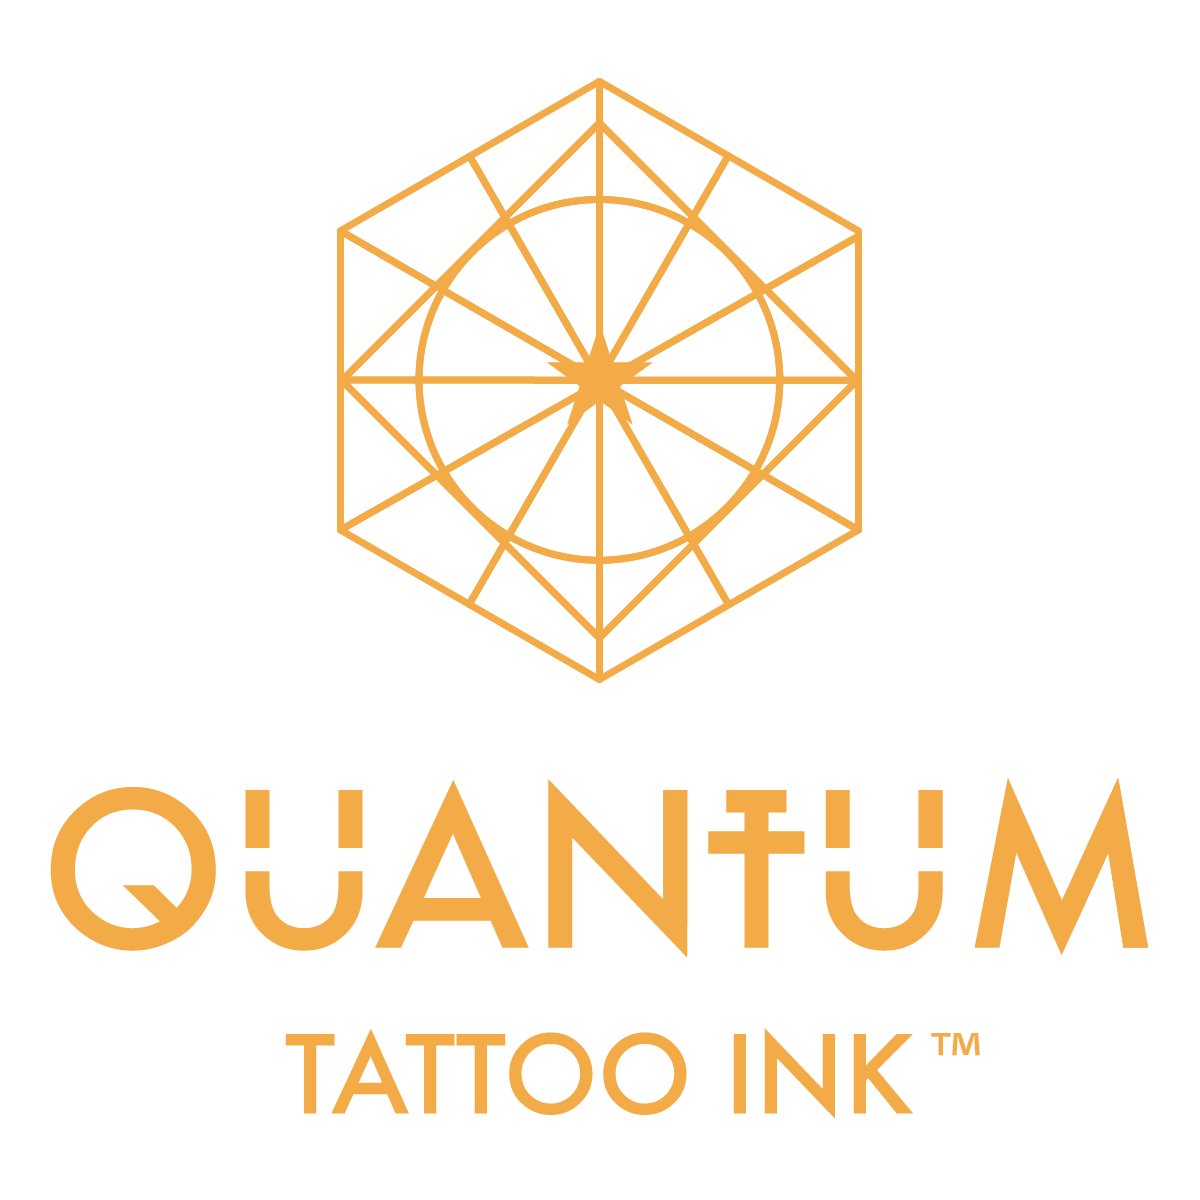 Quantum tattoo ink